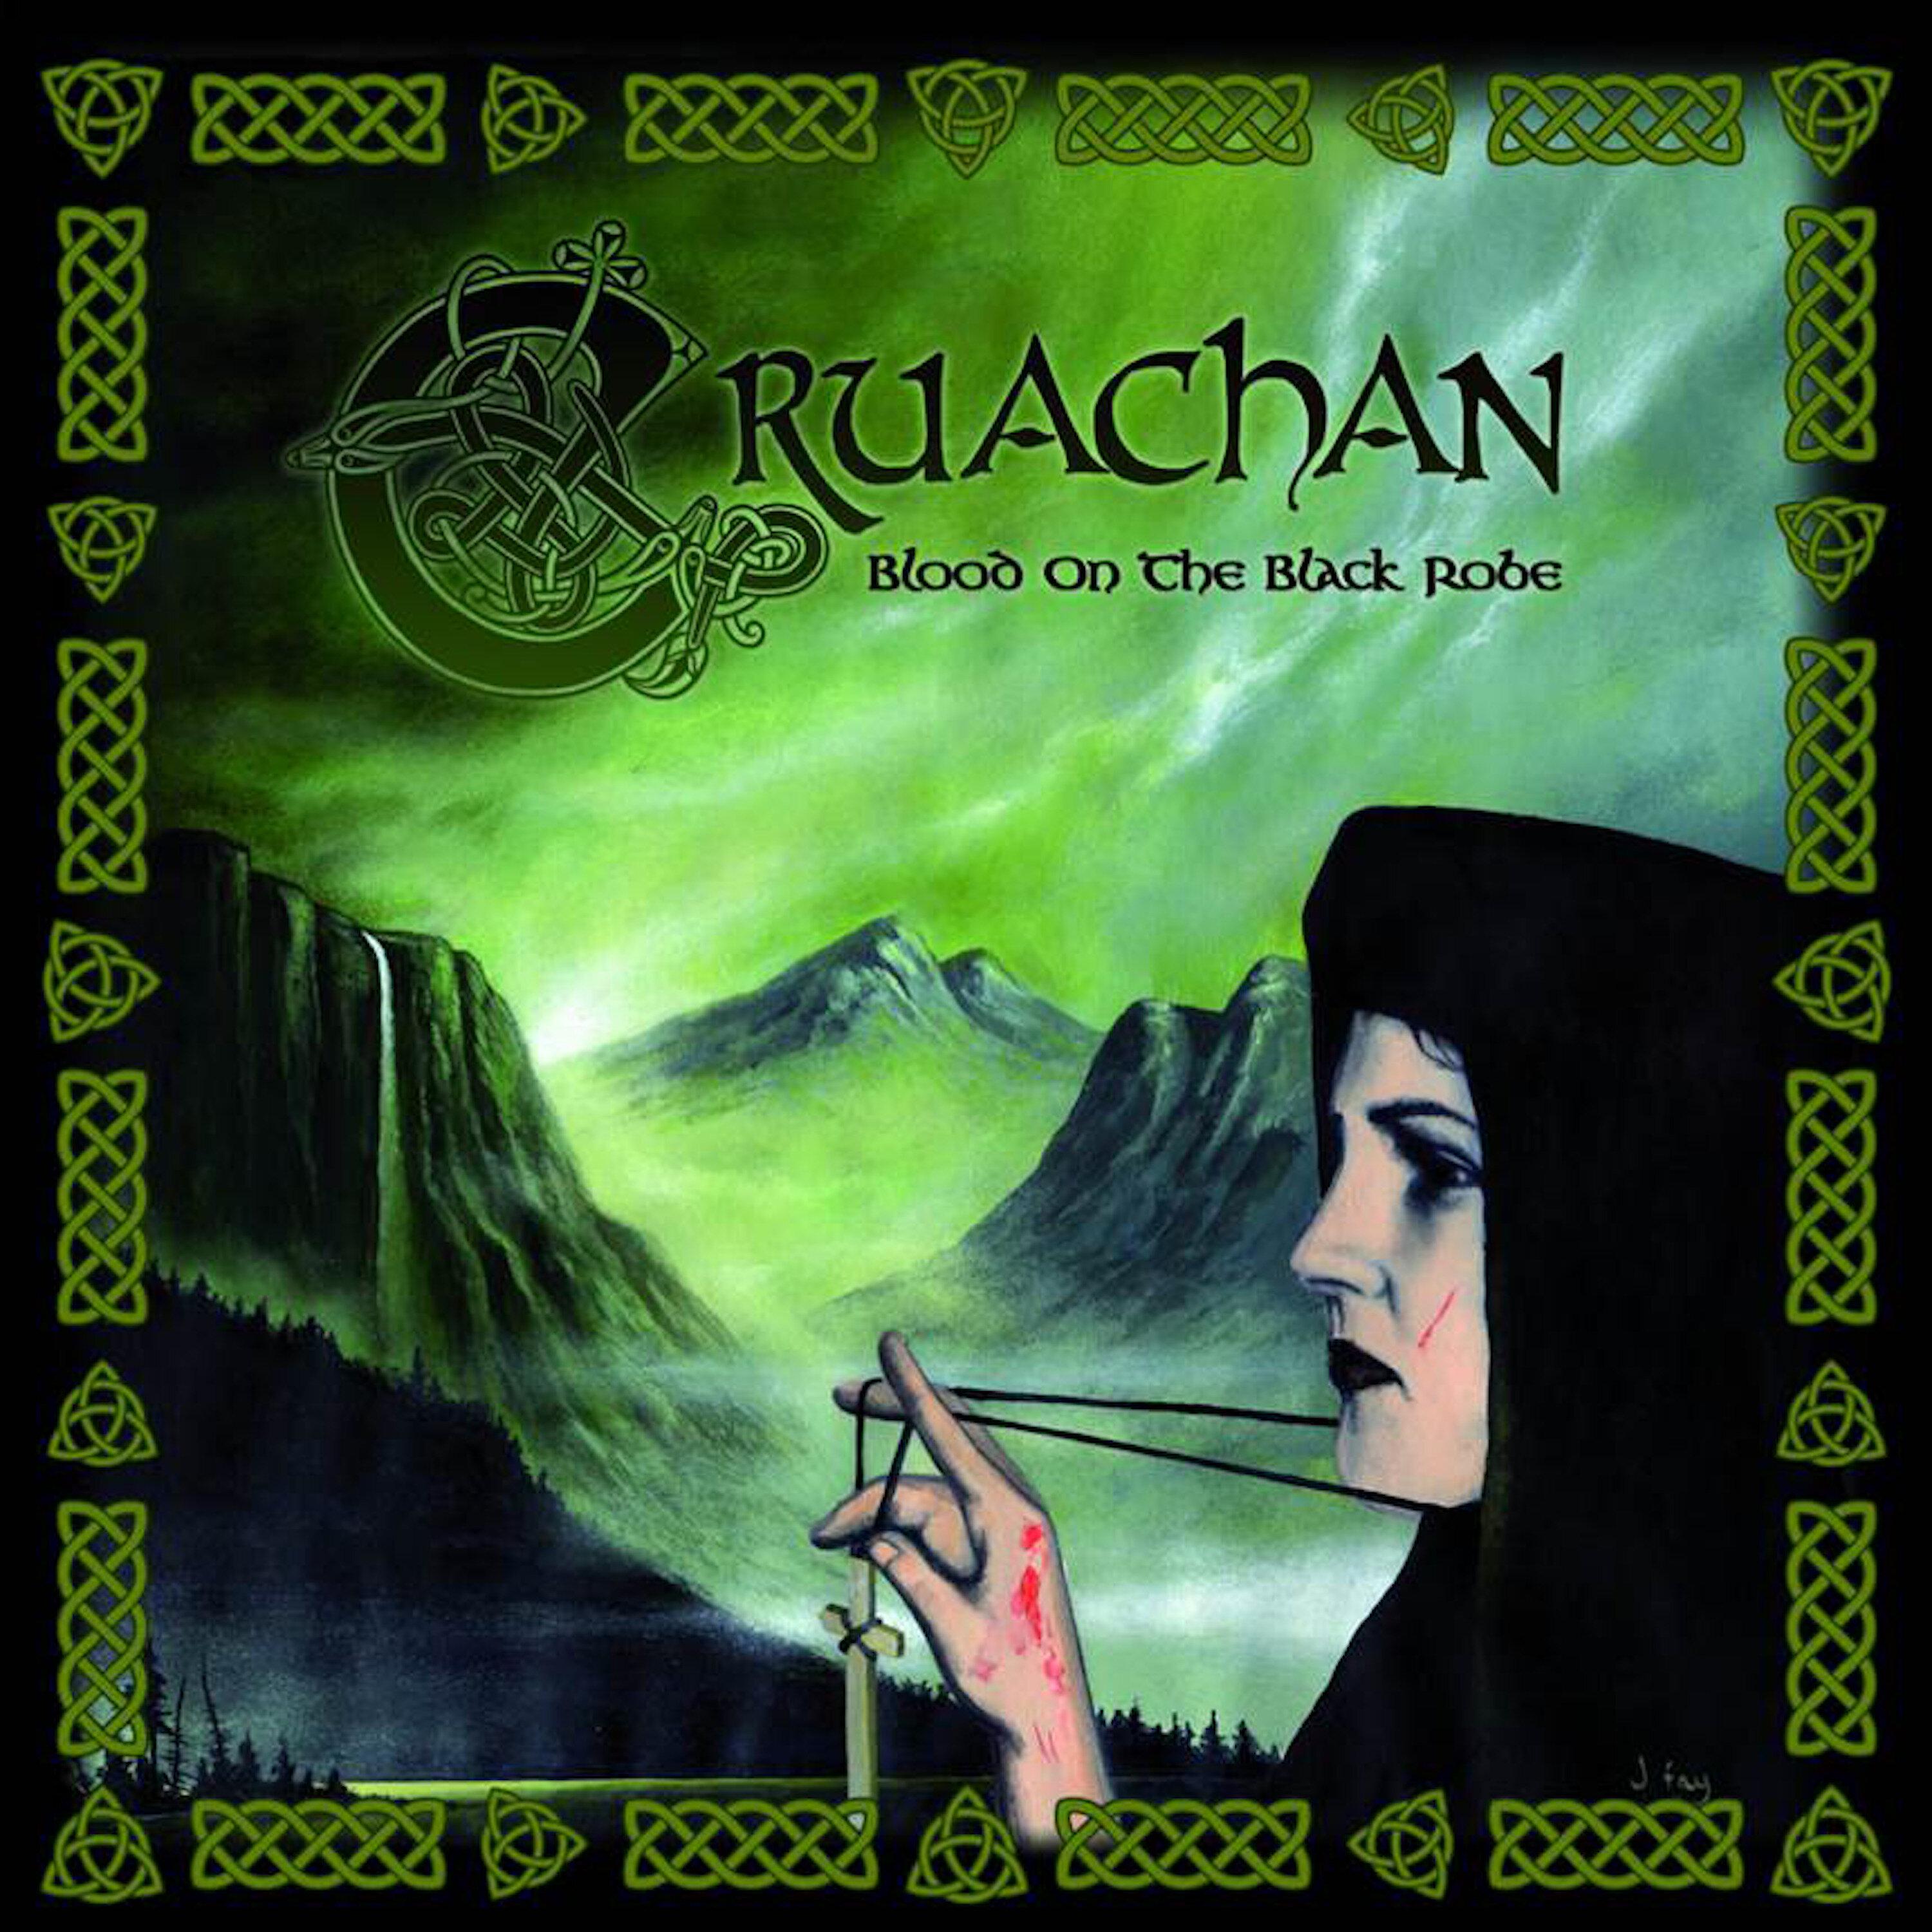 Cruachan - The Column